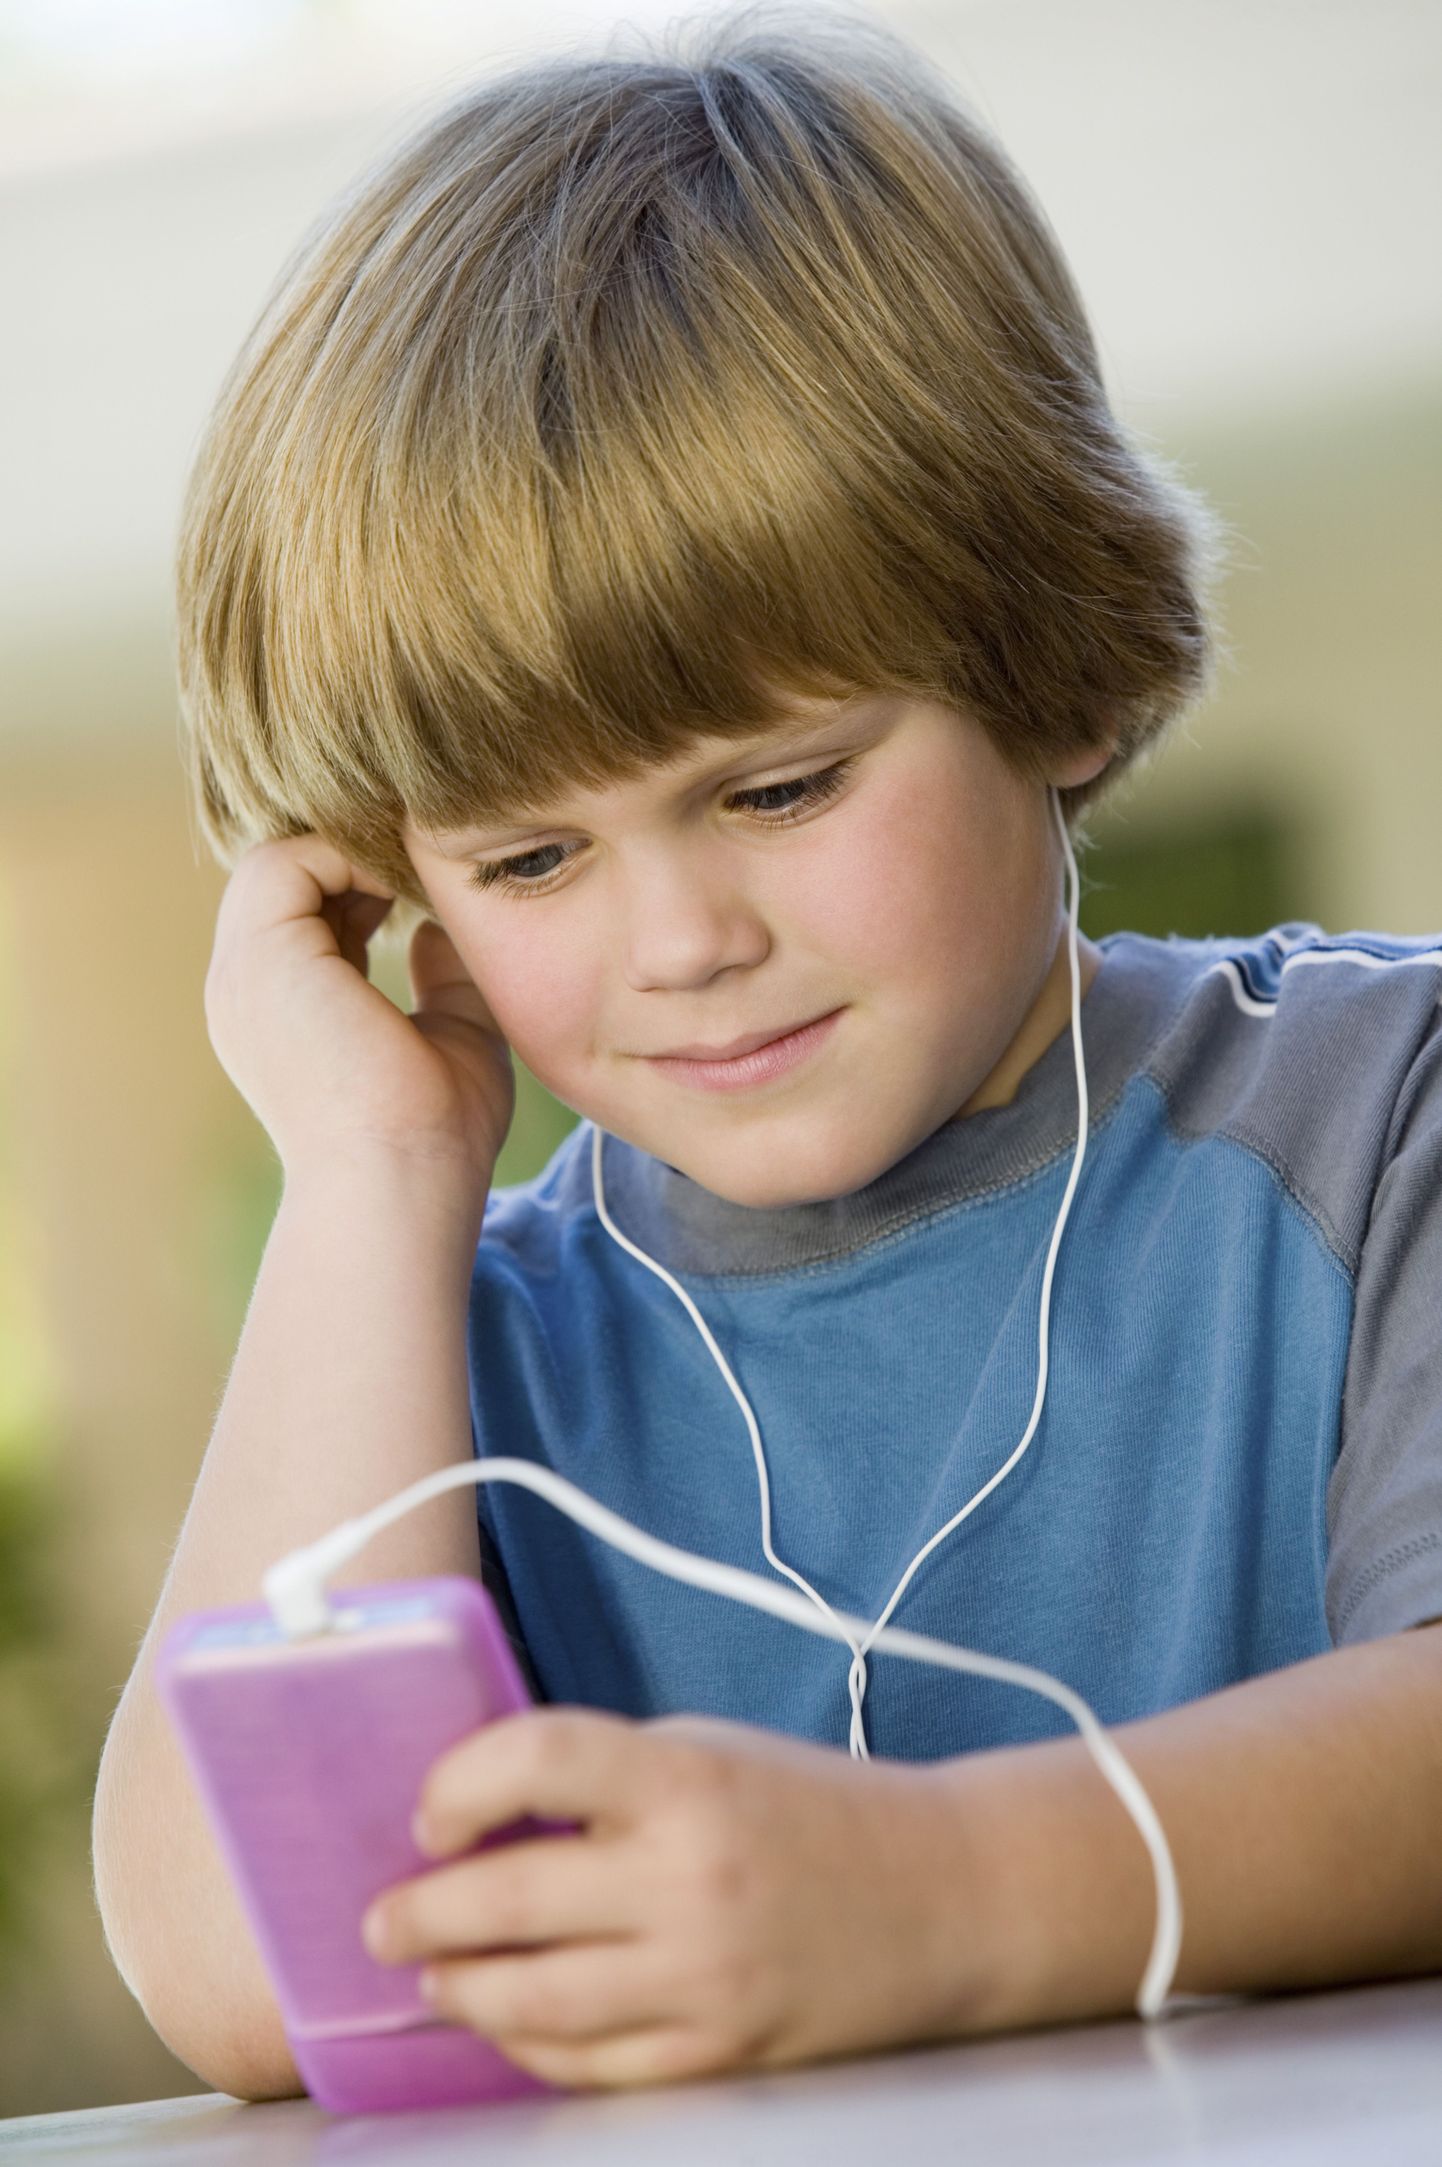 Pidev valju muusika kuulamine kõrvaklappidega võib viia juba noores eas püsiva kuulmiskahjustuseni.